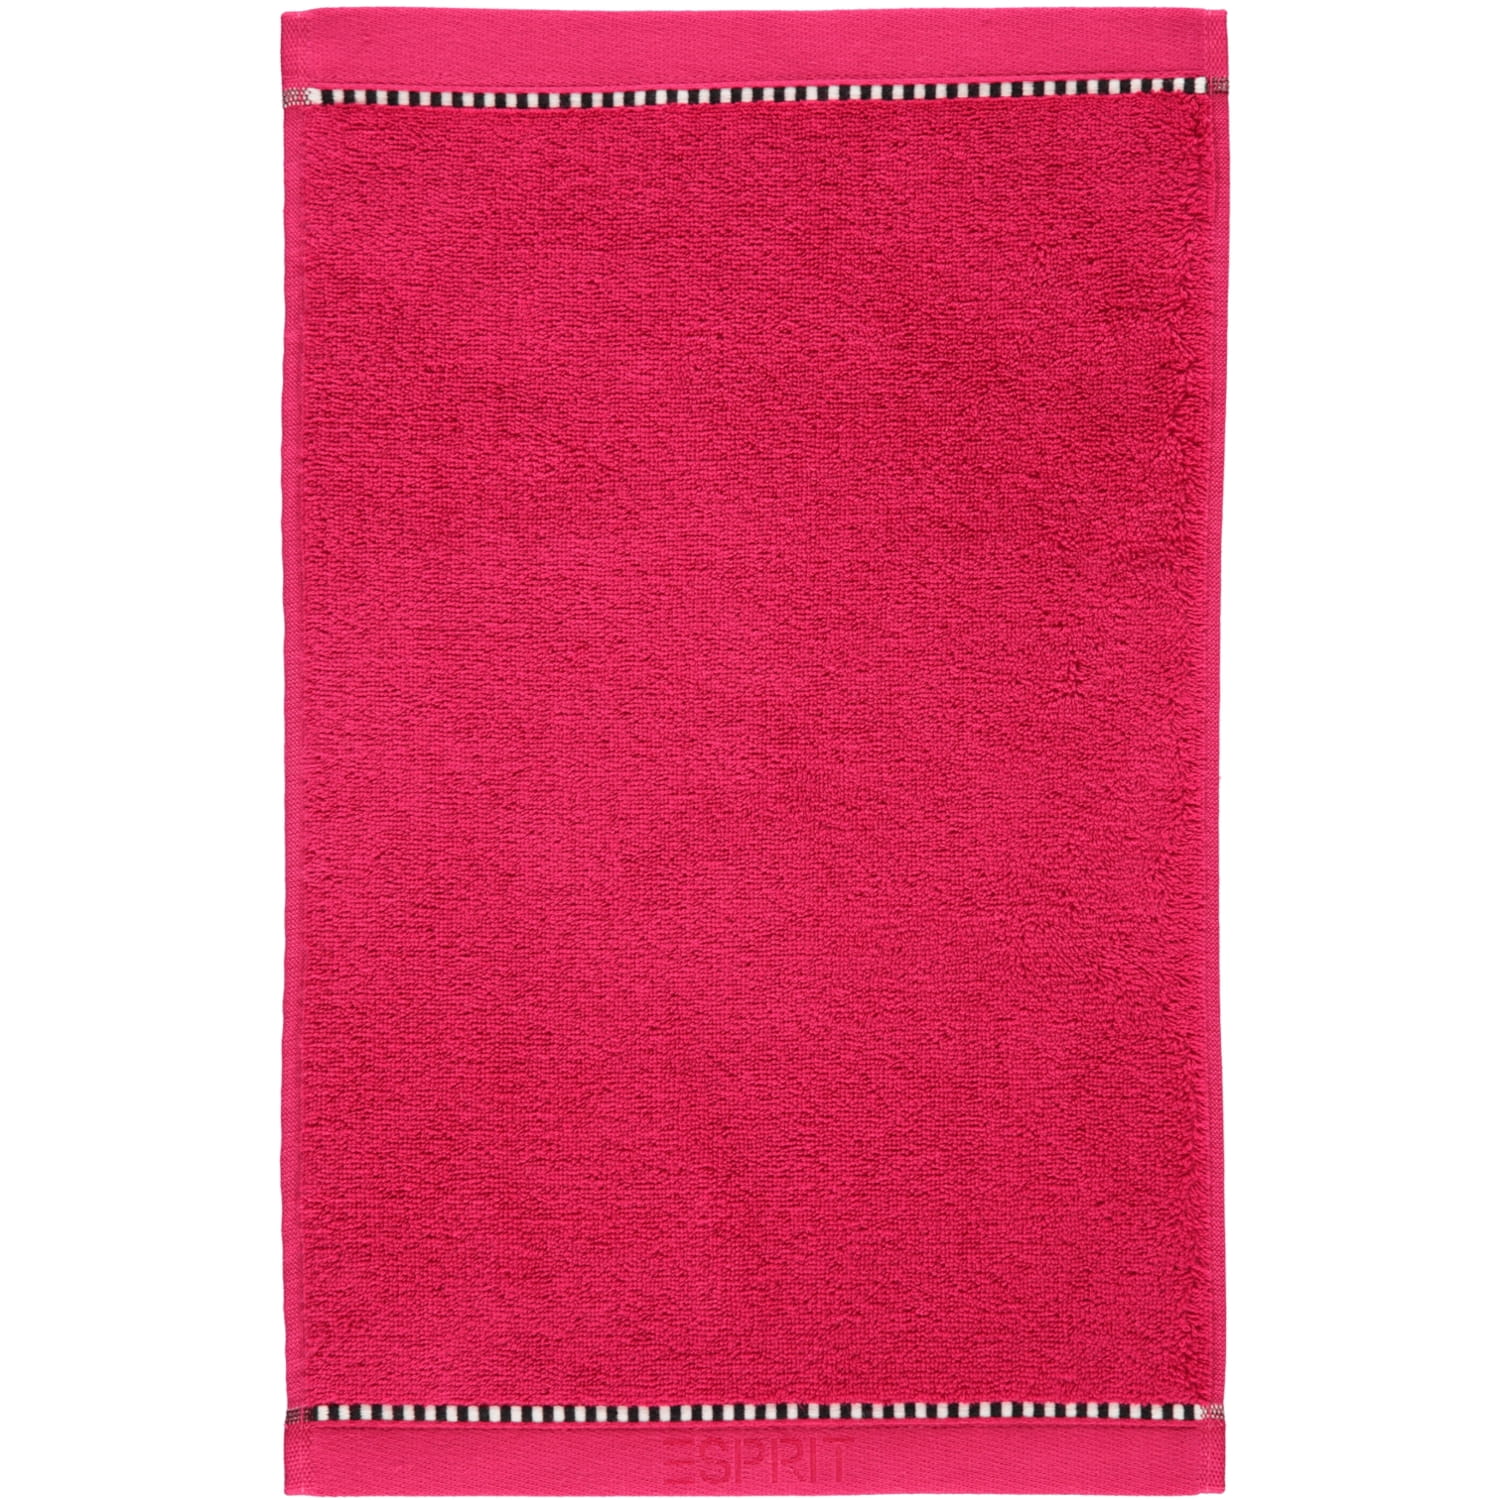 | Handtücher ESPRIT | ESPRIT Box Farbe: Solid Esprit - 362 - | Marken raspberry